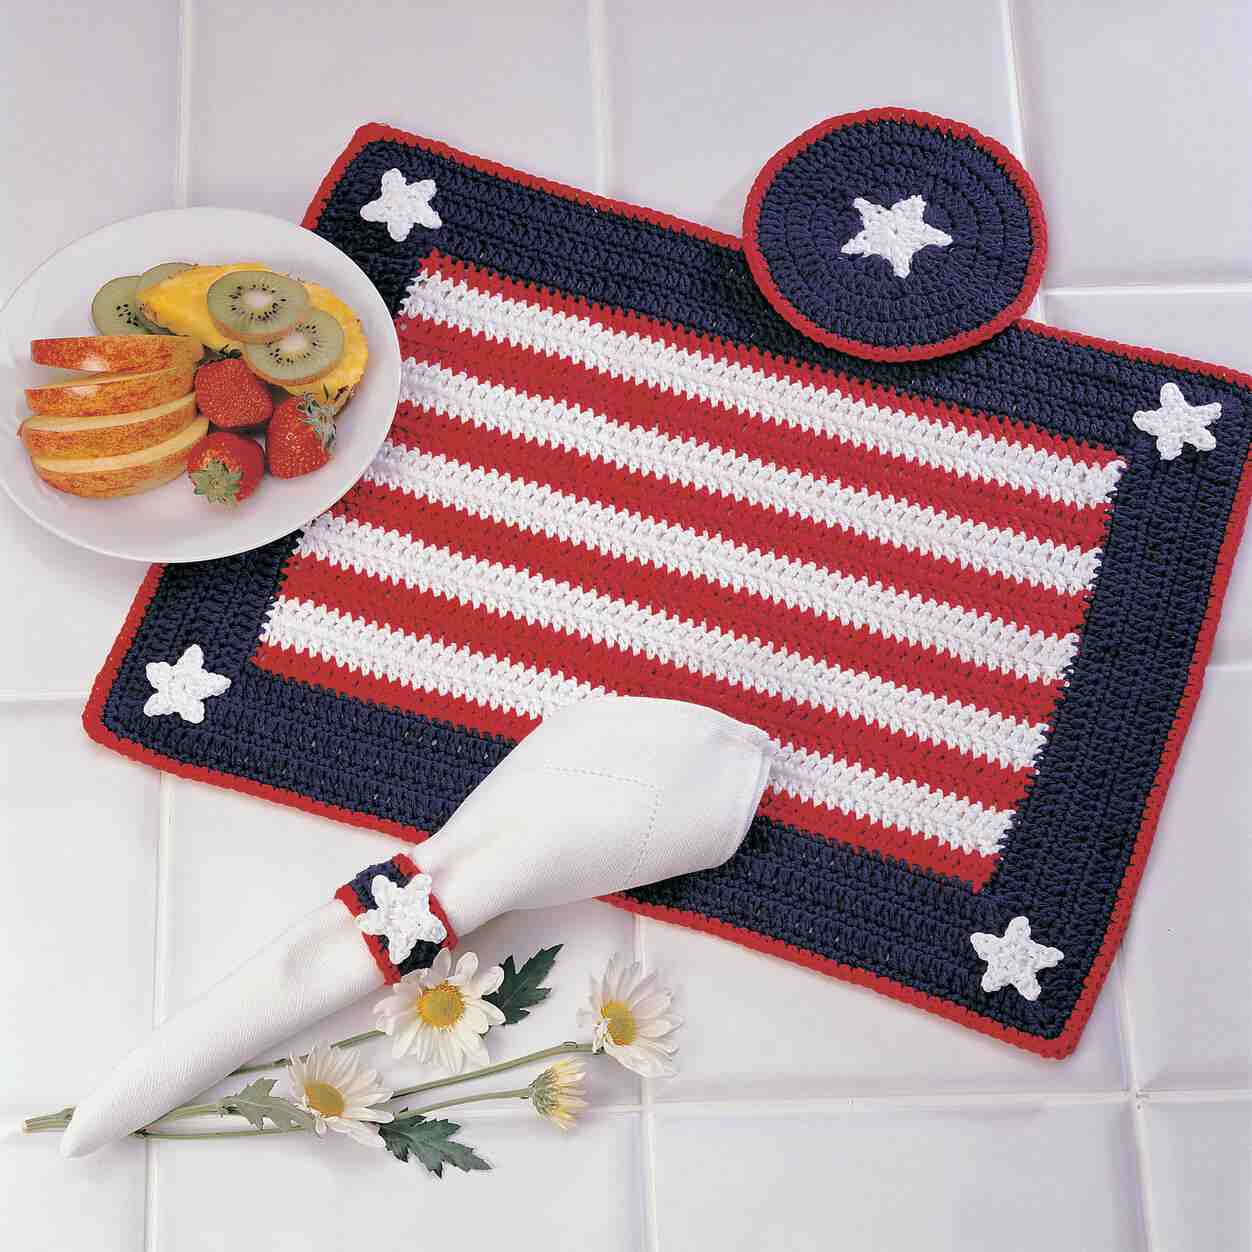 Americana Place Setting - Free Crochet Pattern